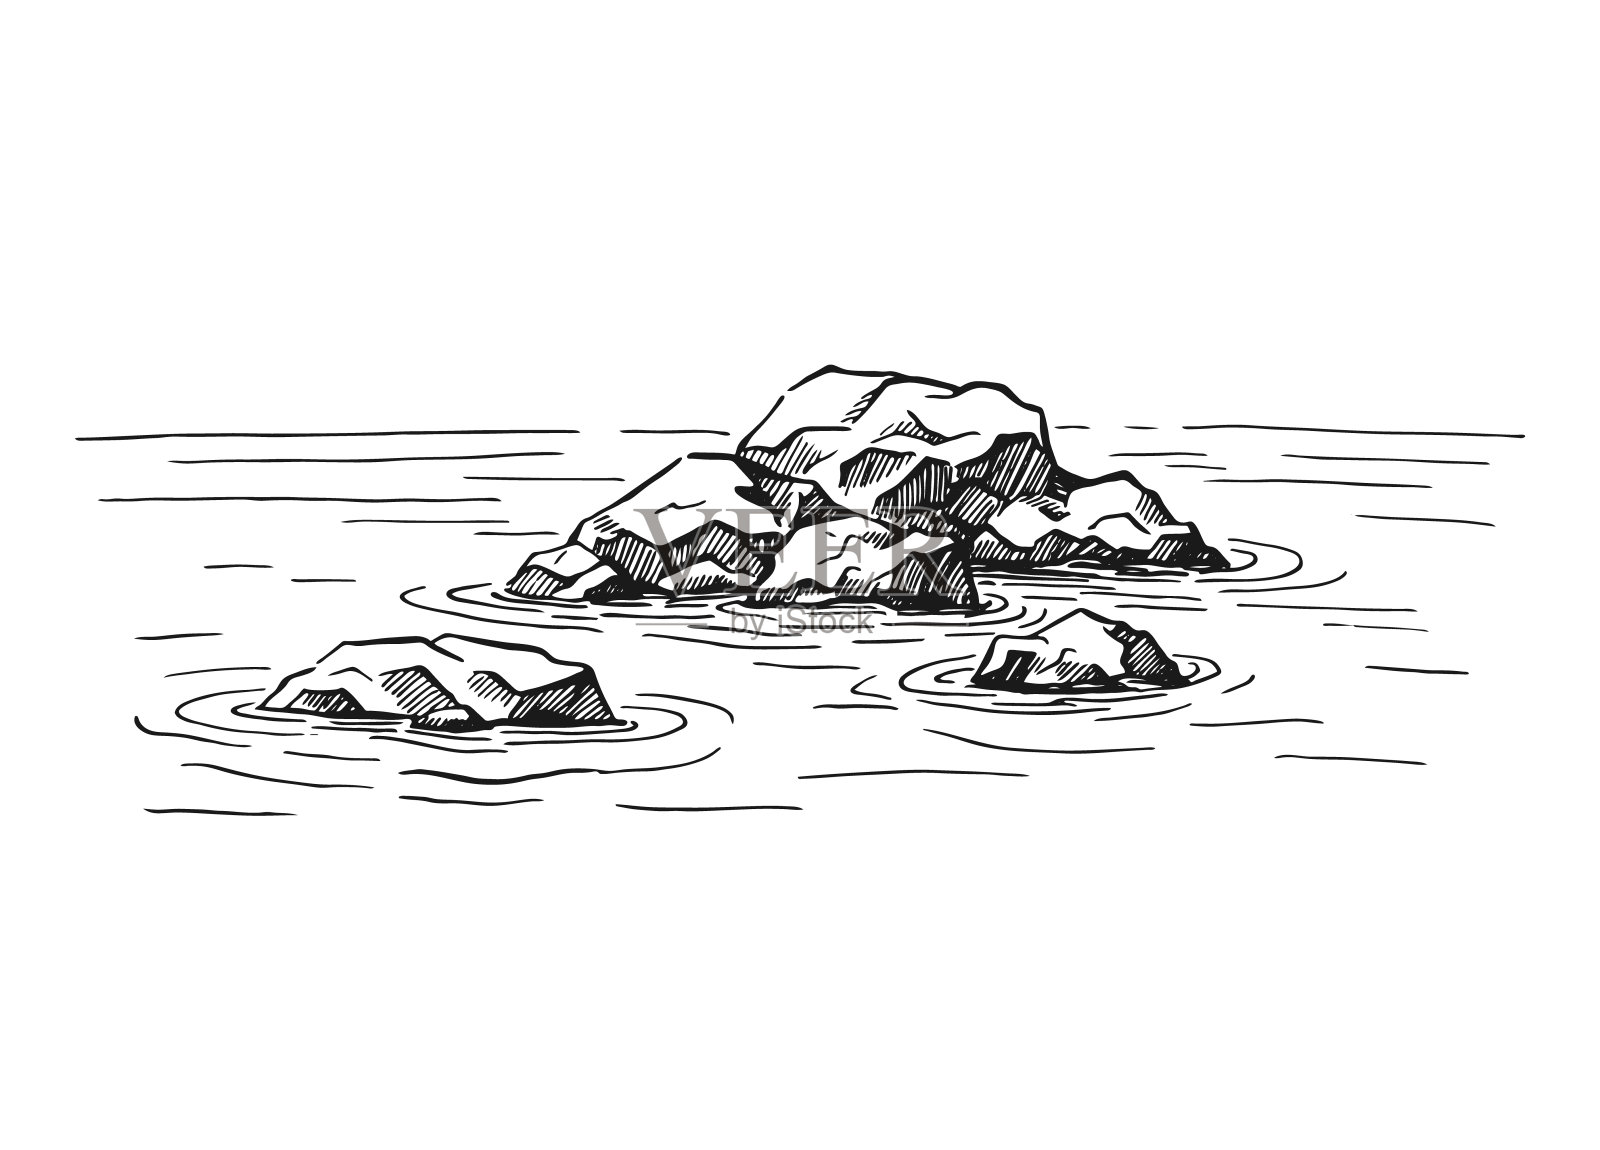 岩石岛简笔画图片